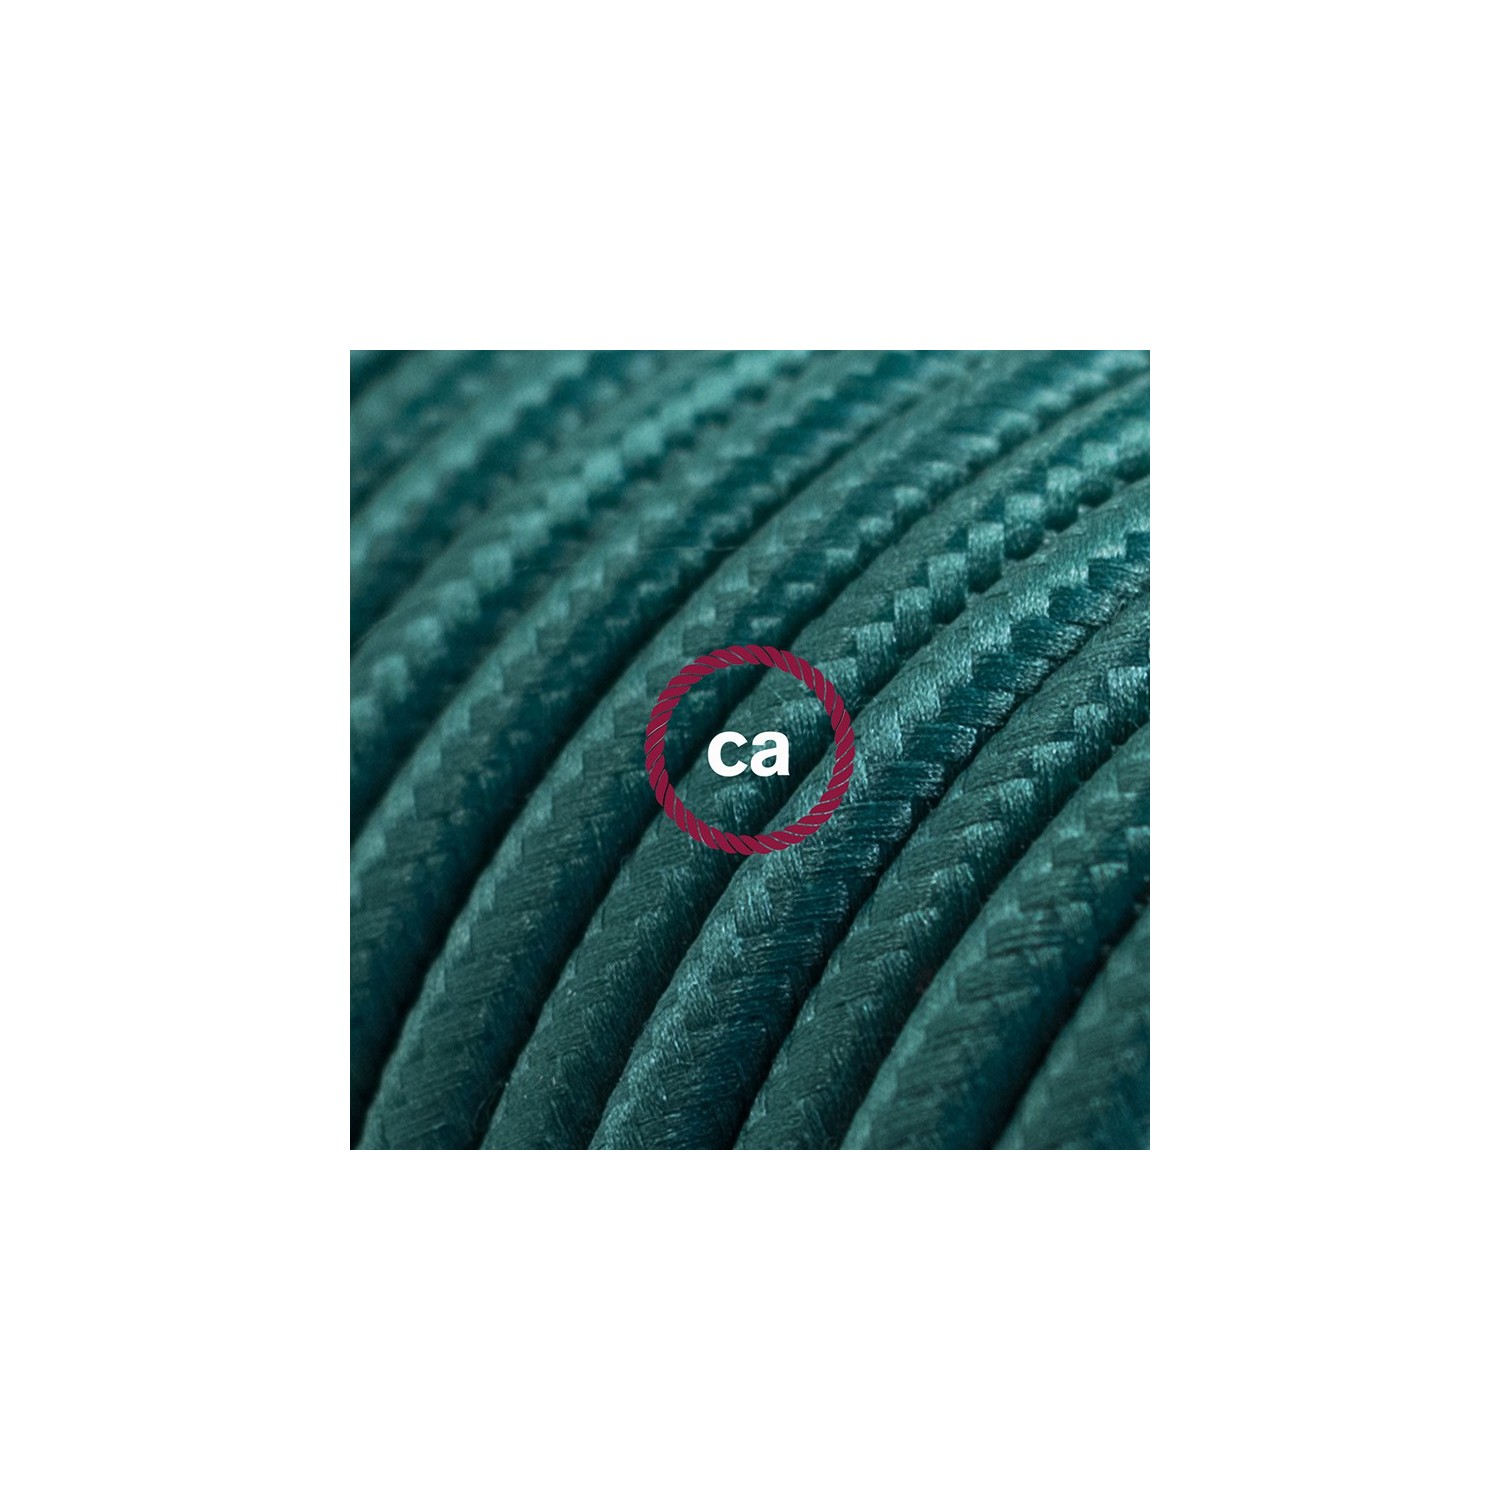 Tmavě zelený hedvábný RM21 2P 10A textilní prodlužovací elektrický kabel. Vyrobený v Itálii.